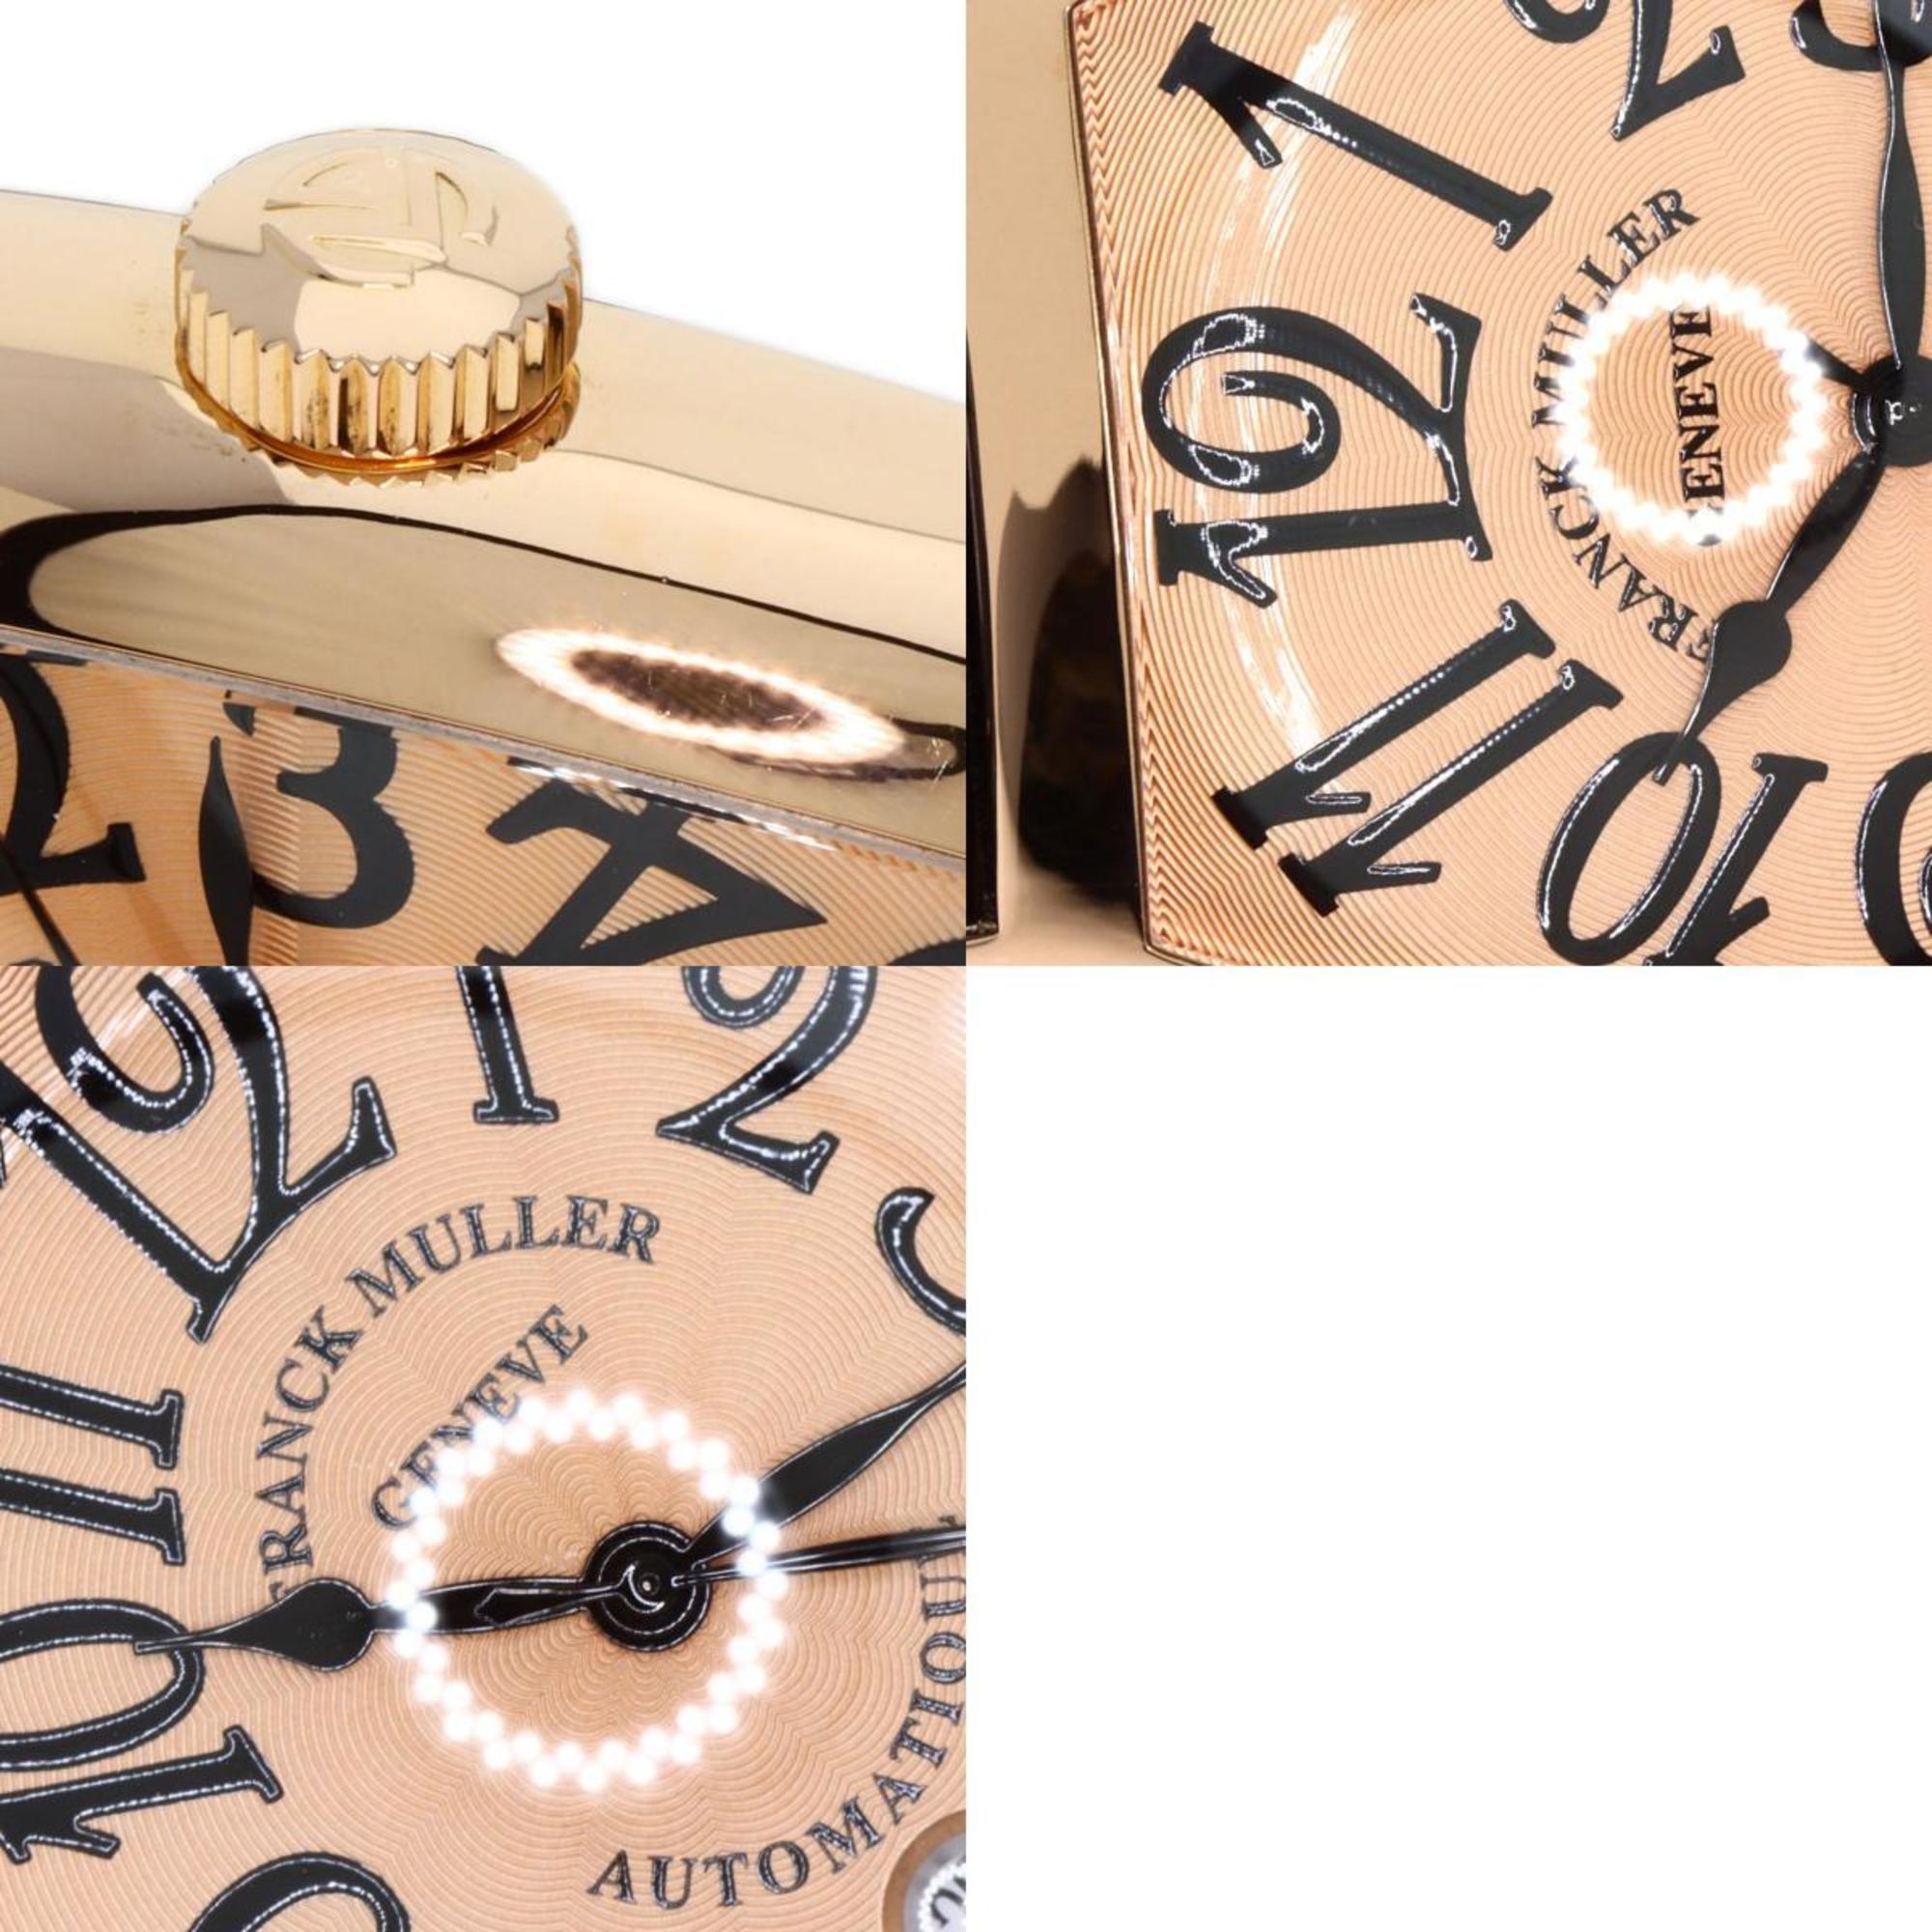 Franck Muller 8880 B SCDT Tonneau Curvex Date Watch K18 Pink Gold/Leather Men's FRANCK MULLER